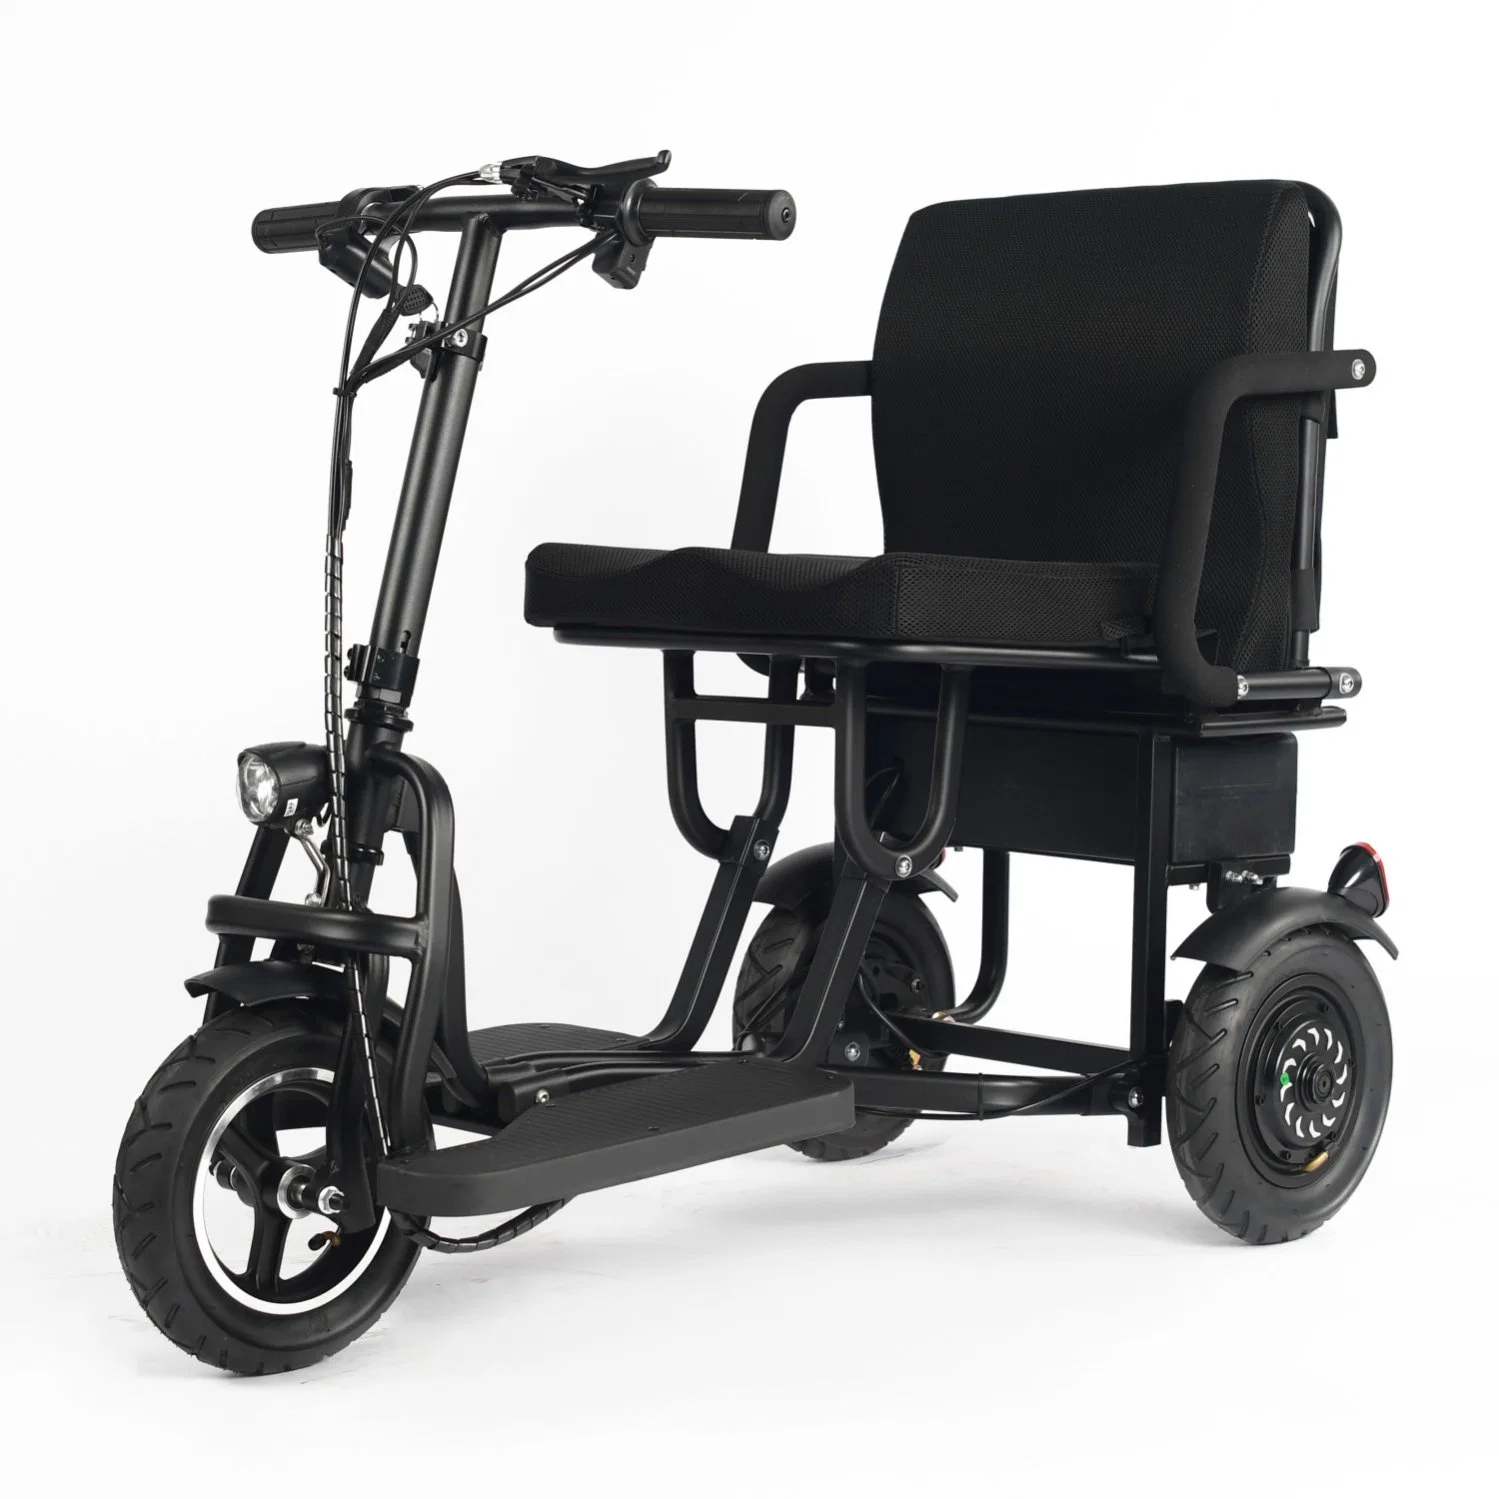 Scooter de vélo électrique portable rabattable à 3 roues avec siège pour Les personnes handicapées